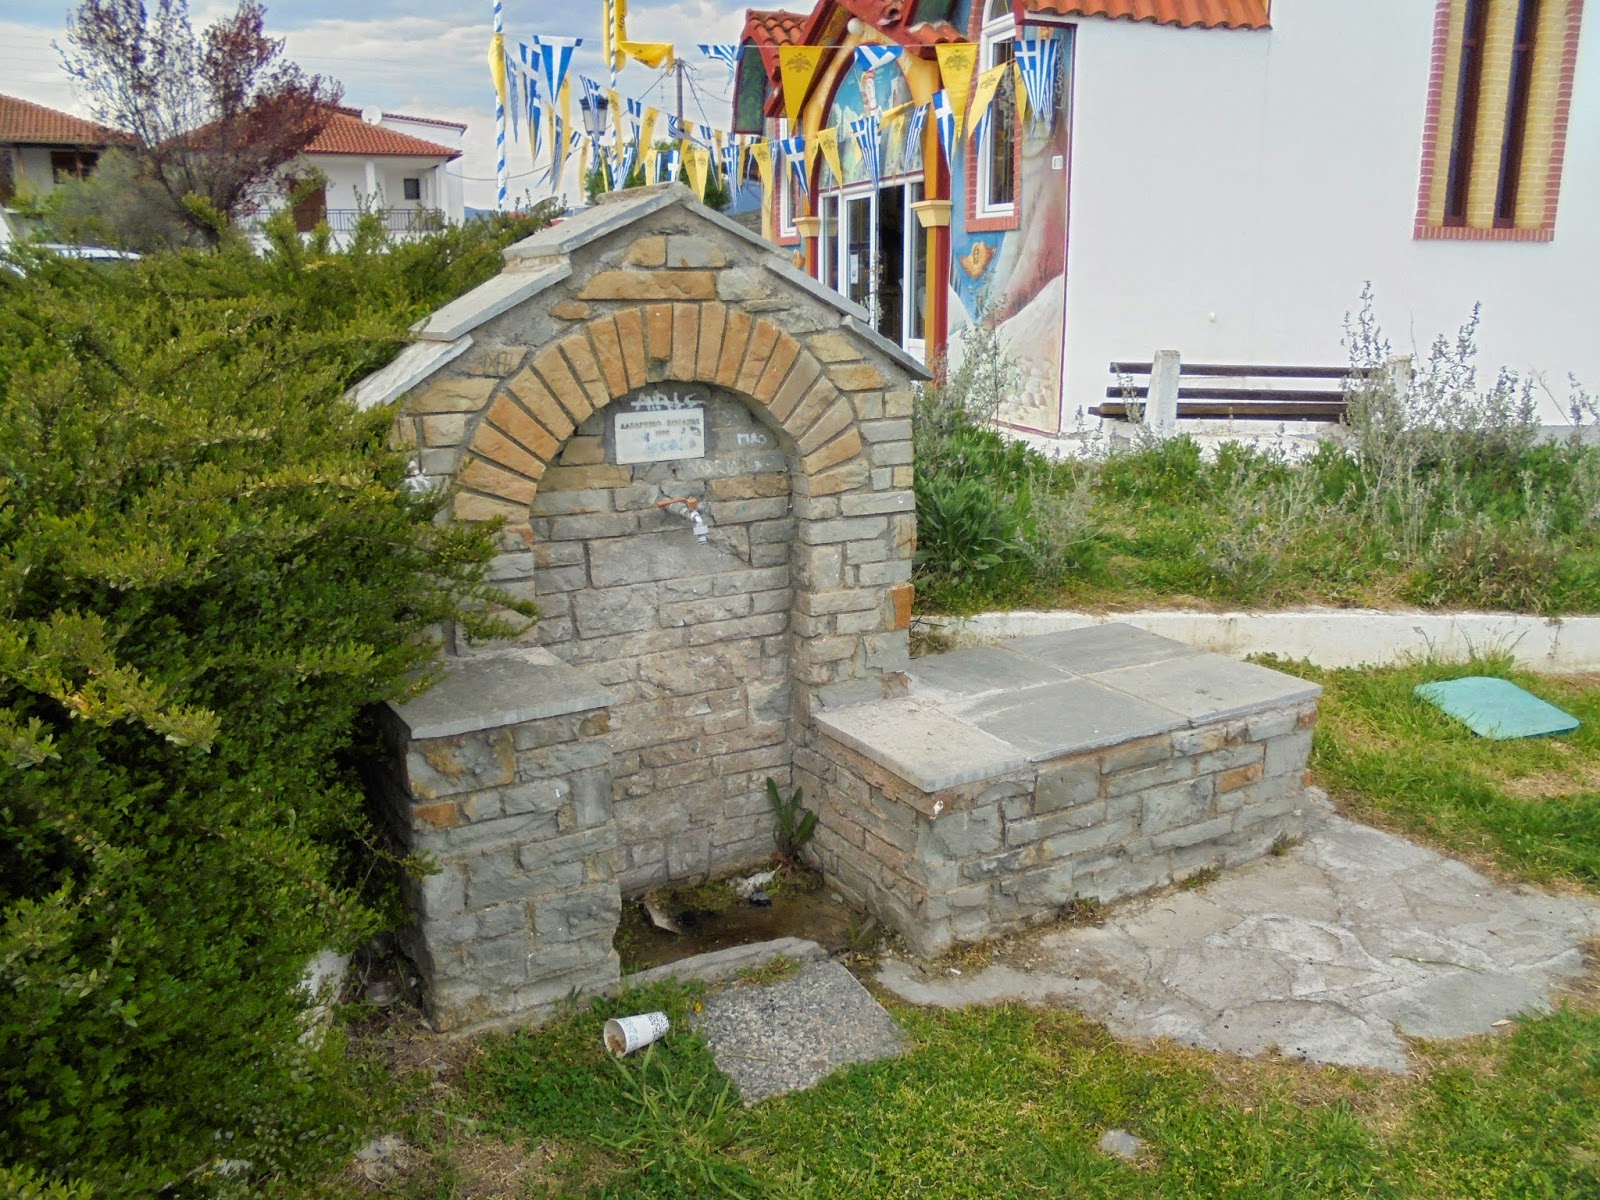 κρήνη στο ναό του αγίου Γεωργίου στη Νεράιδα της Κοζάνης